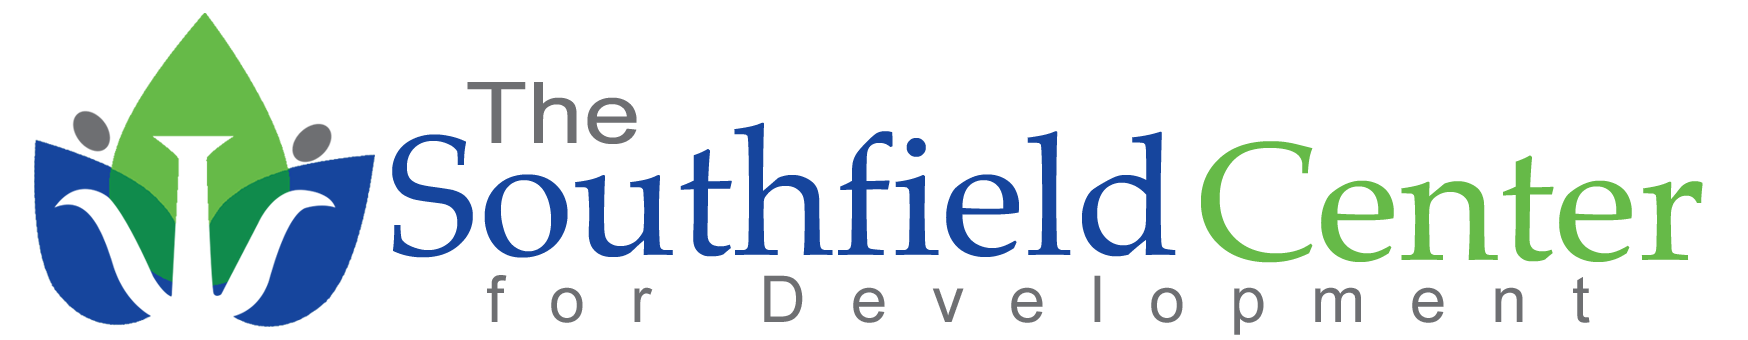 The Southfield Center Company Logo